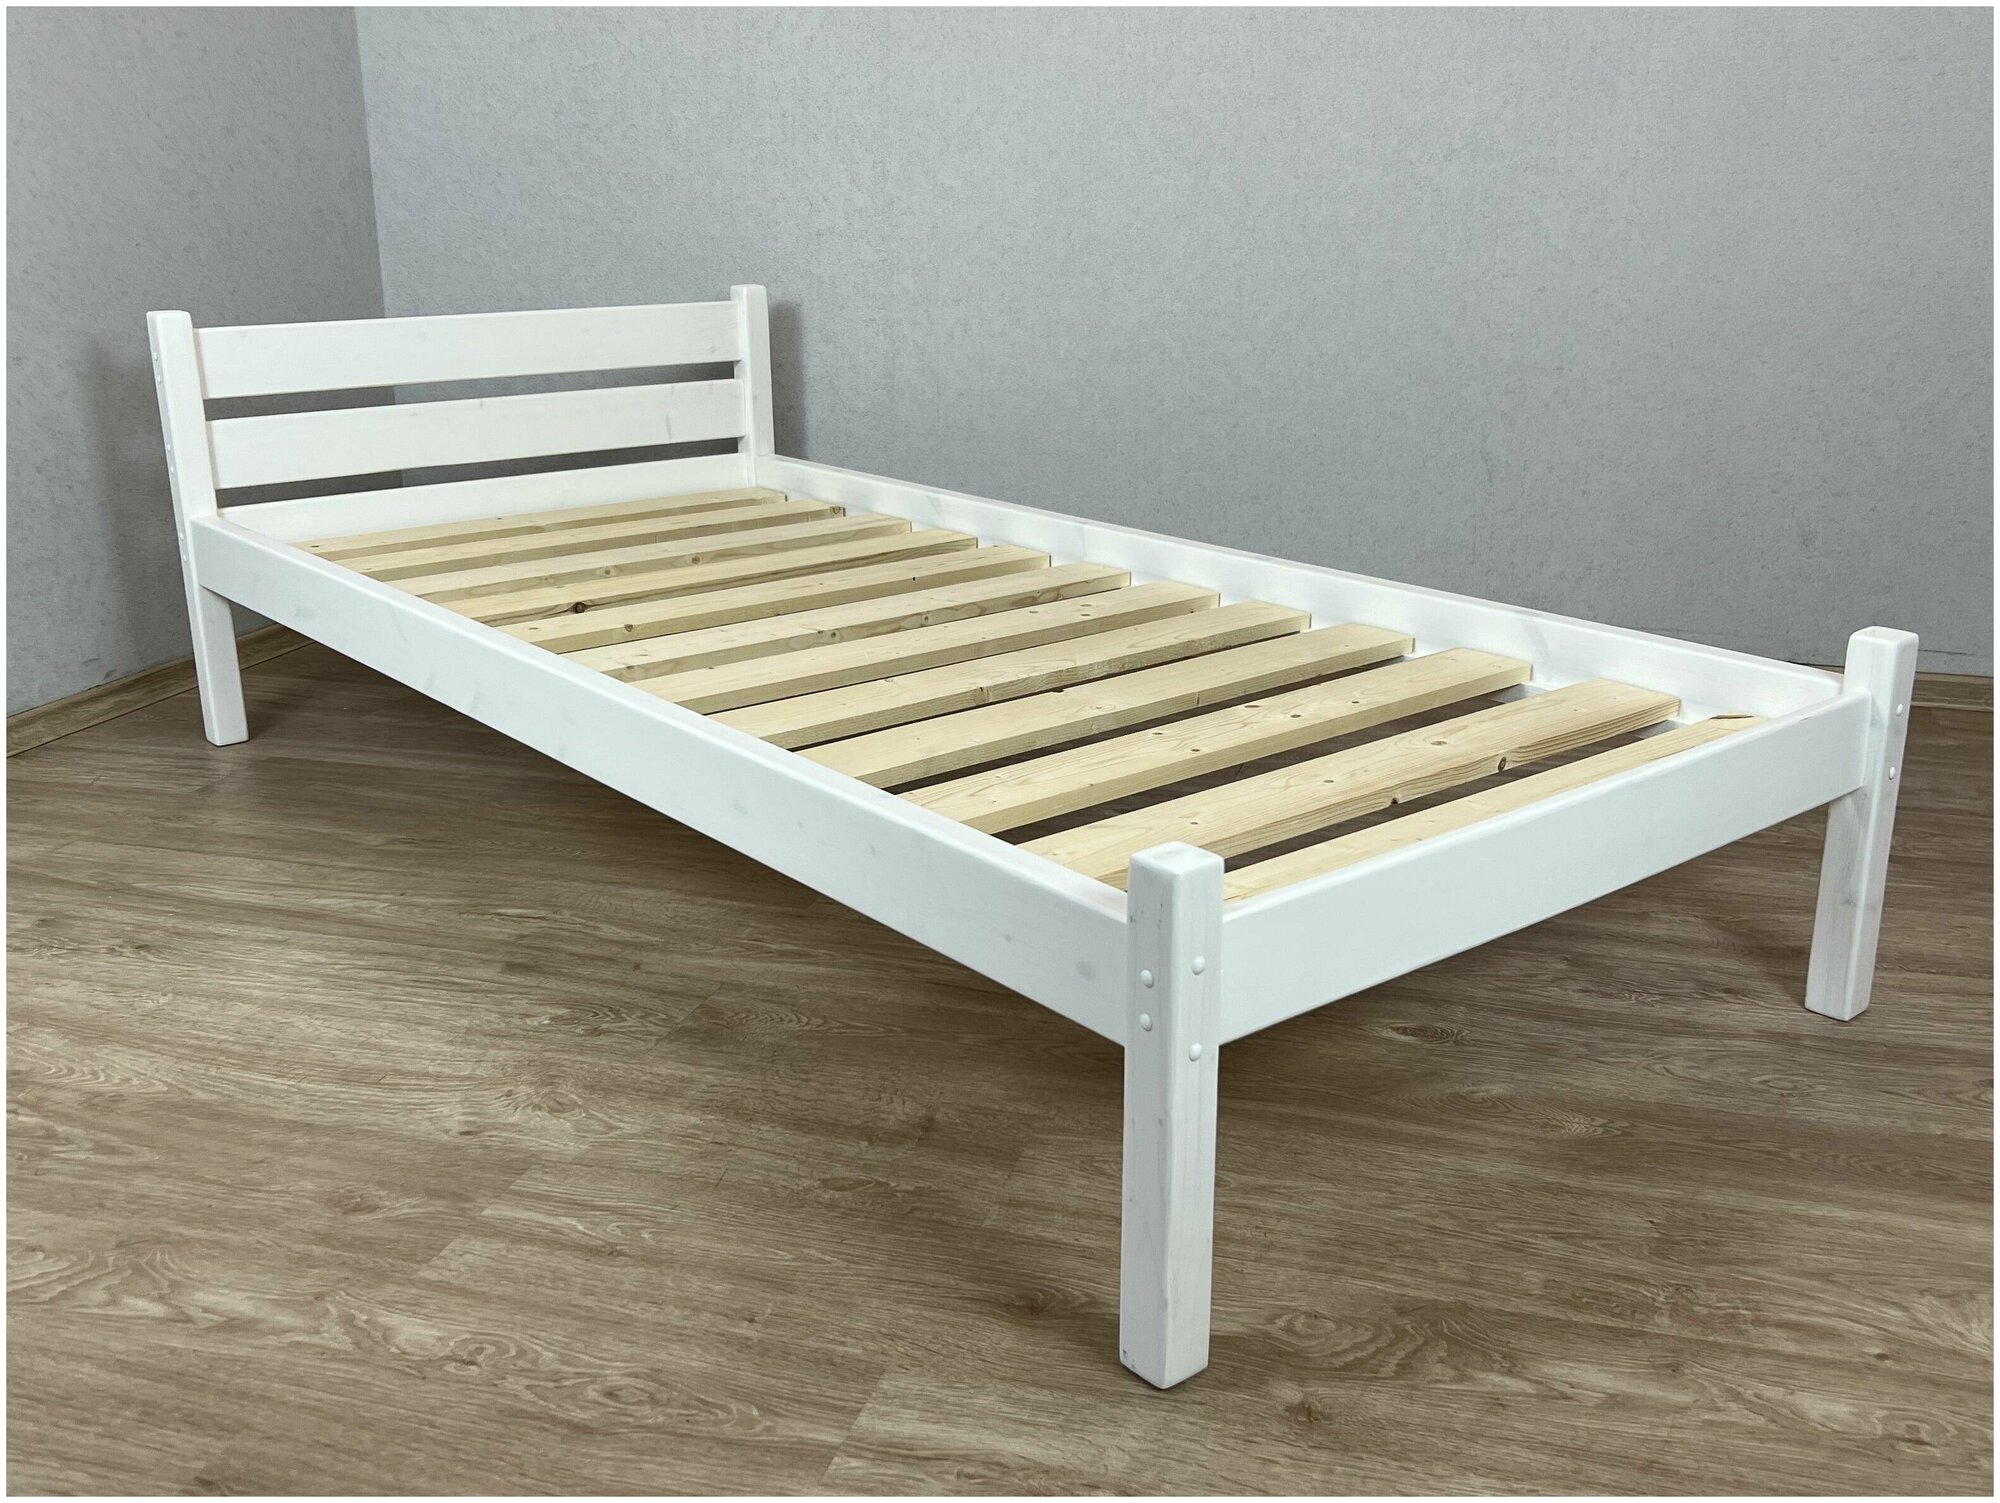 Кровать Классика лакированная из массива сосны с основанием односпальная 190х80 см, цвет белый (габариты 200х90)